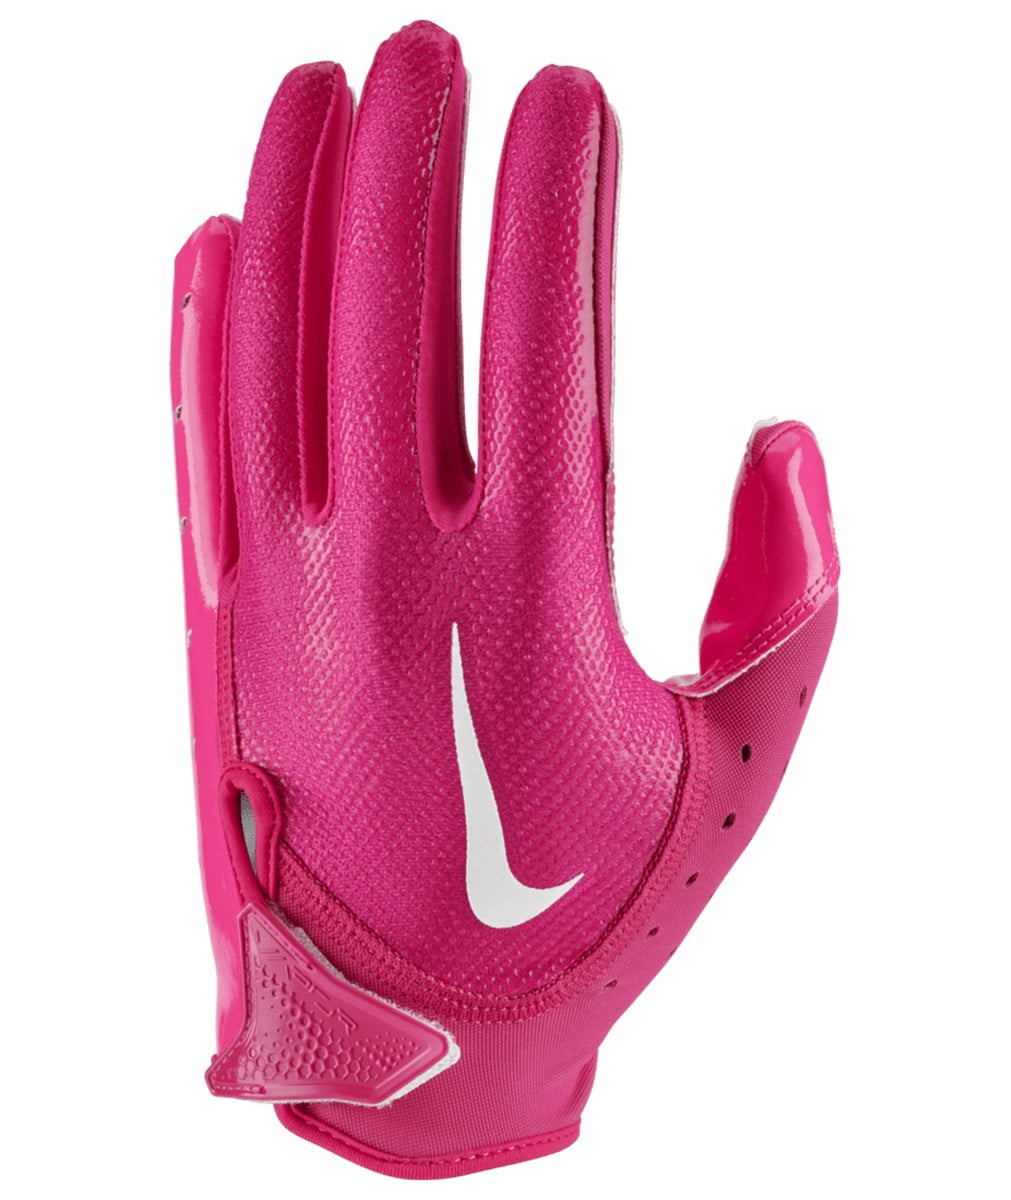 Nike Vapor Jet 7.0 Football Gloves - S - S (Small)